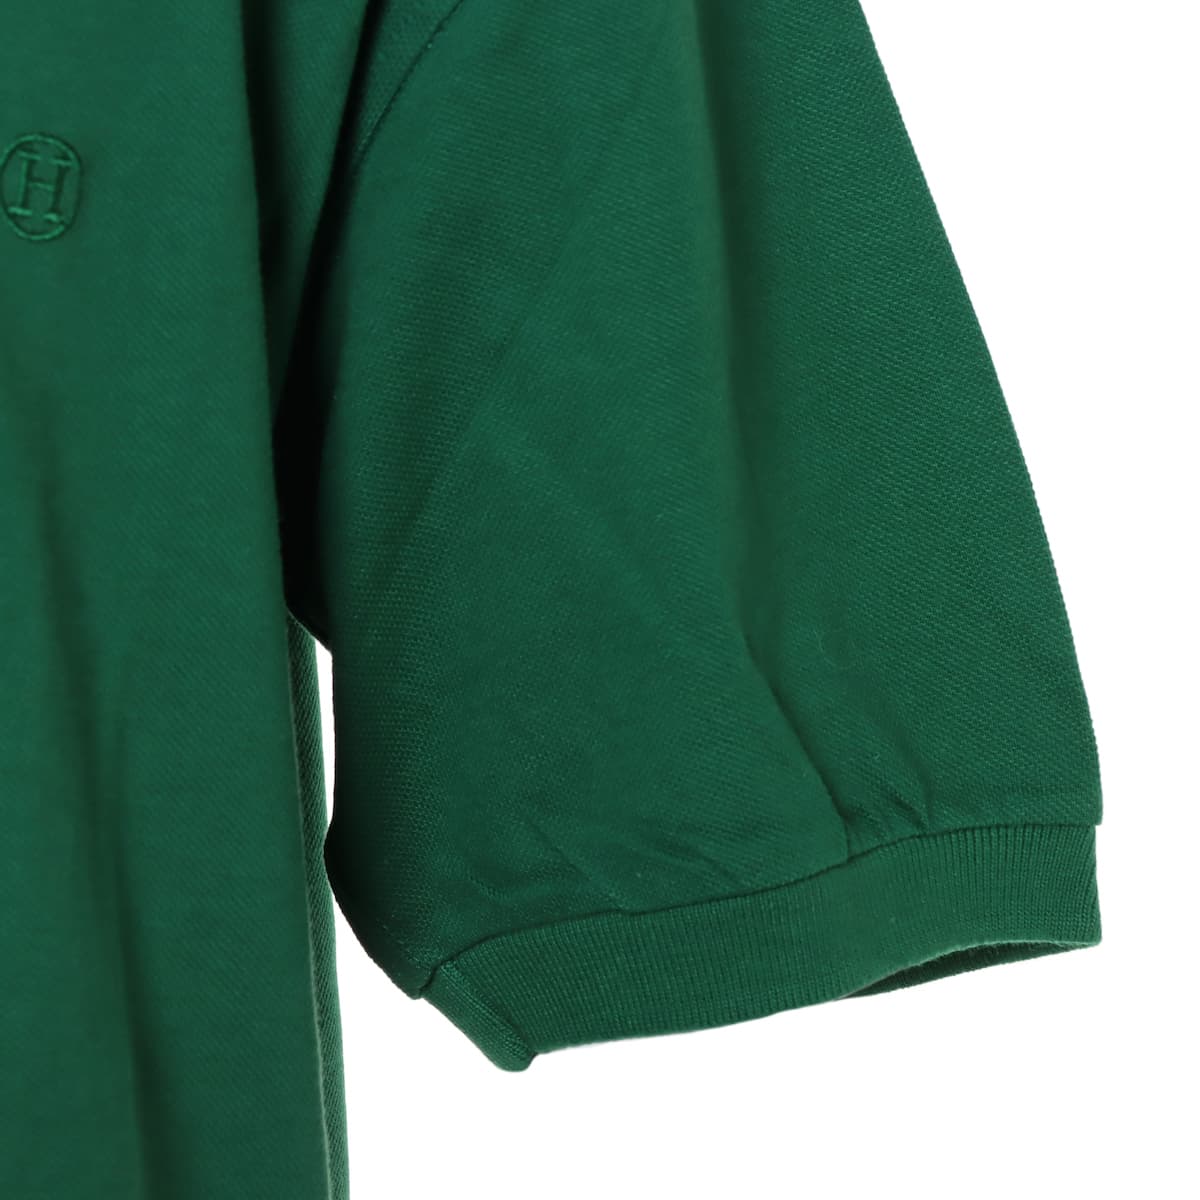 エルメス コットン ポロシャツ XL メンズ グリーン  H刺繍 ソルド品